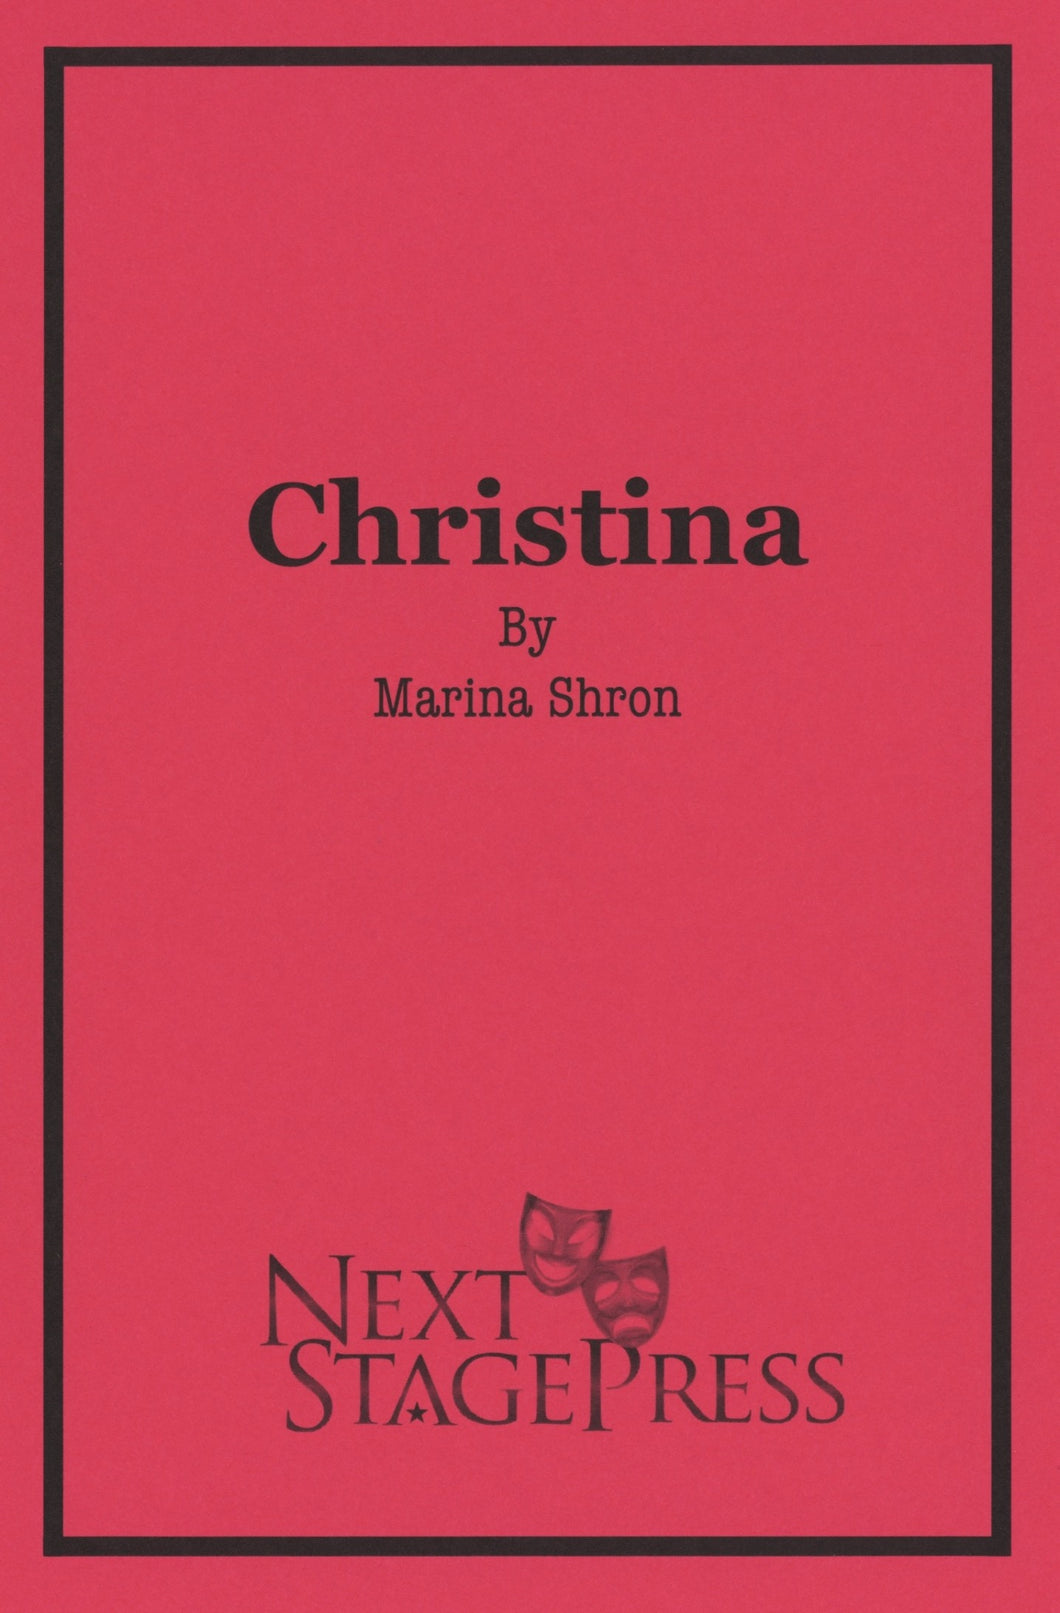 CHRISTINA by Marina Shron